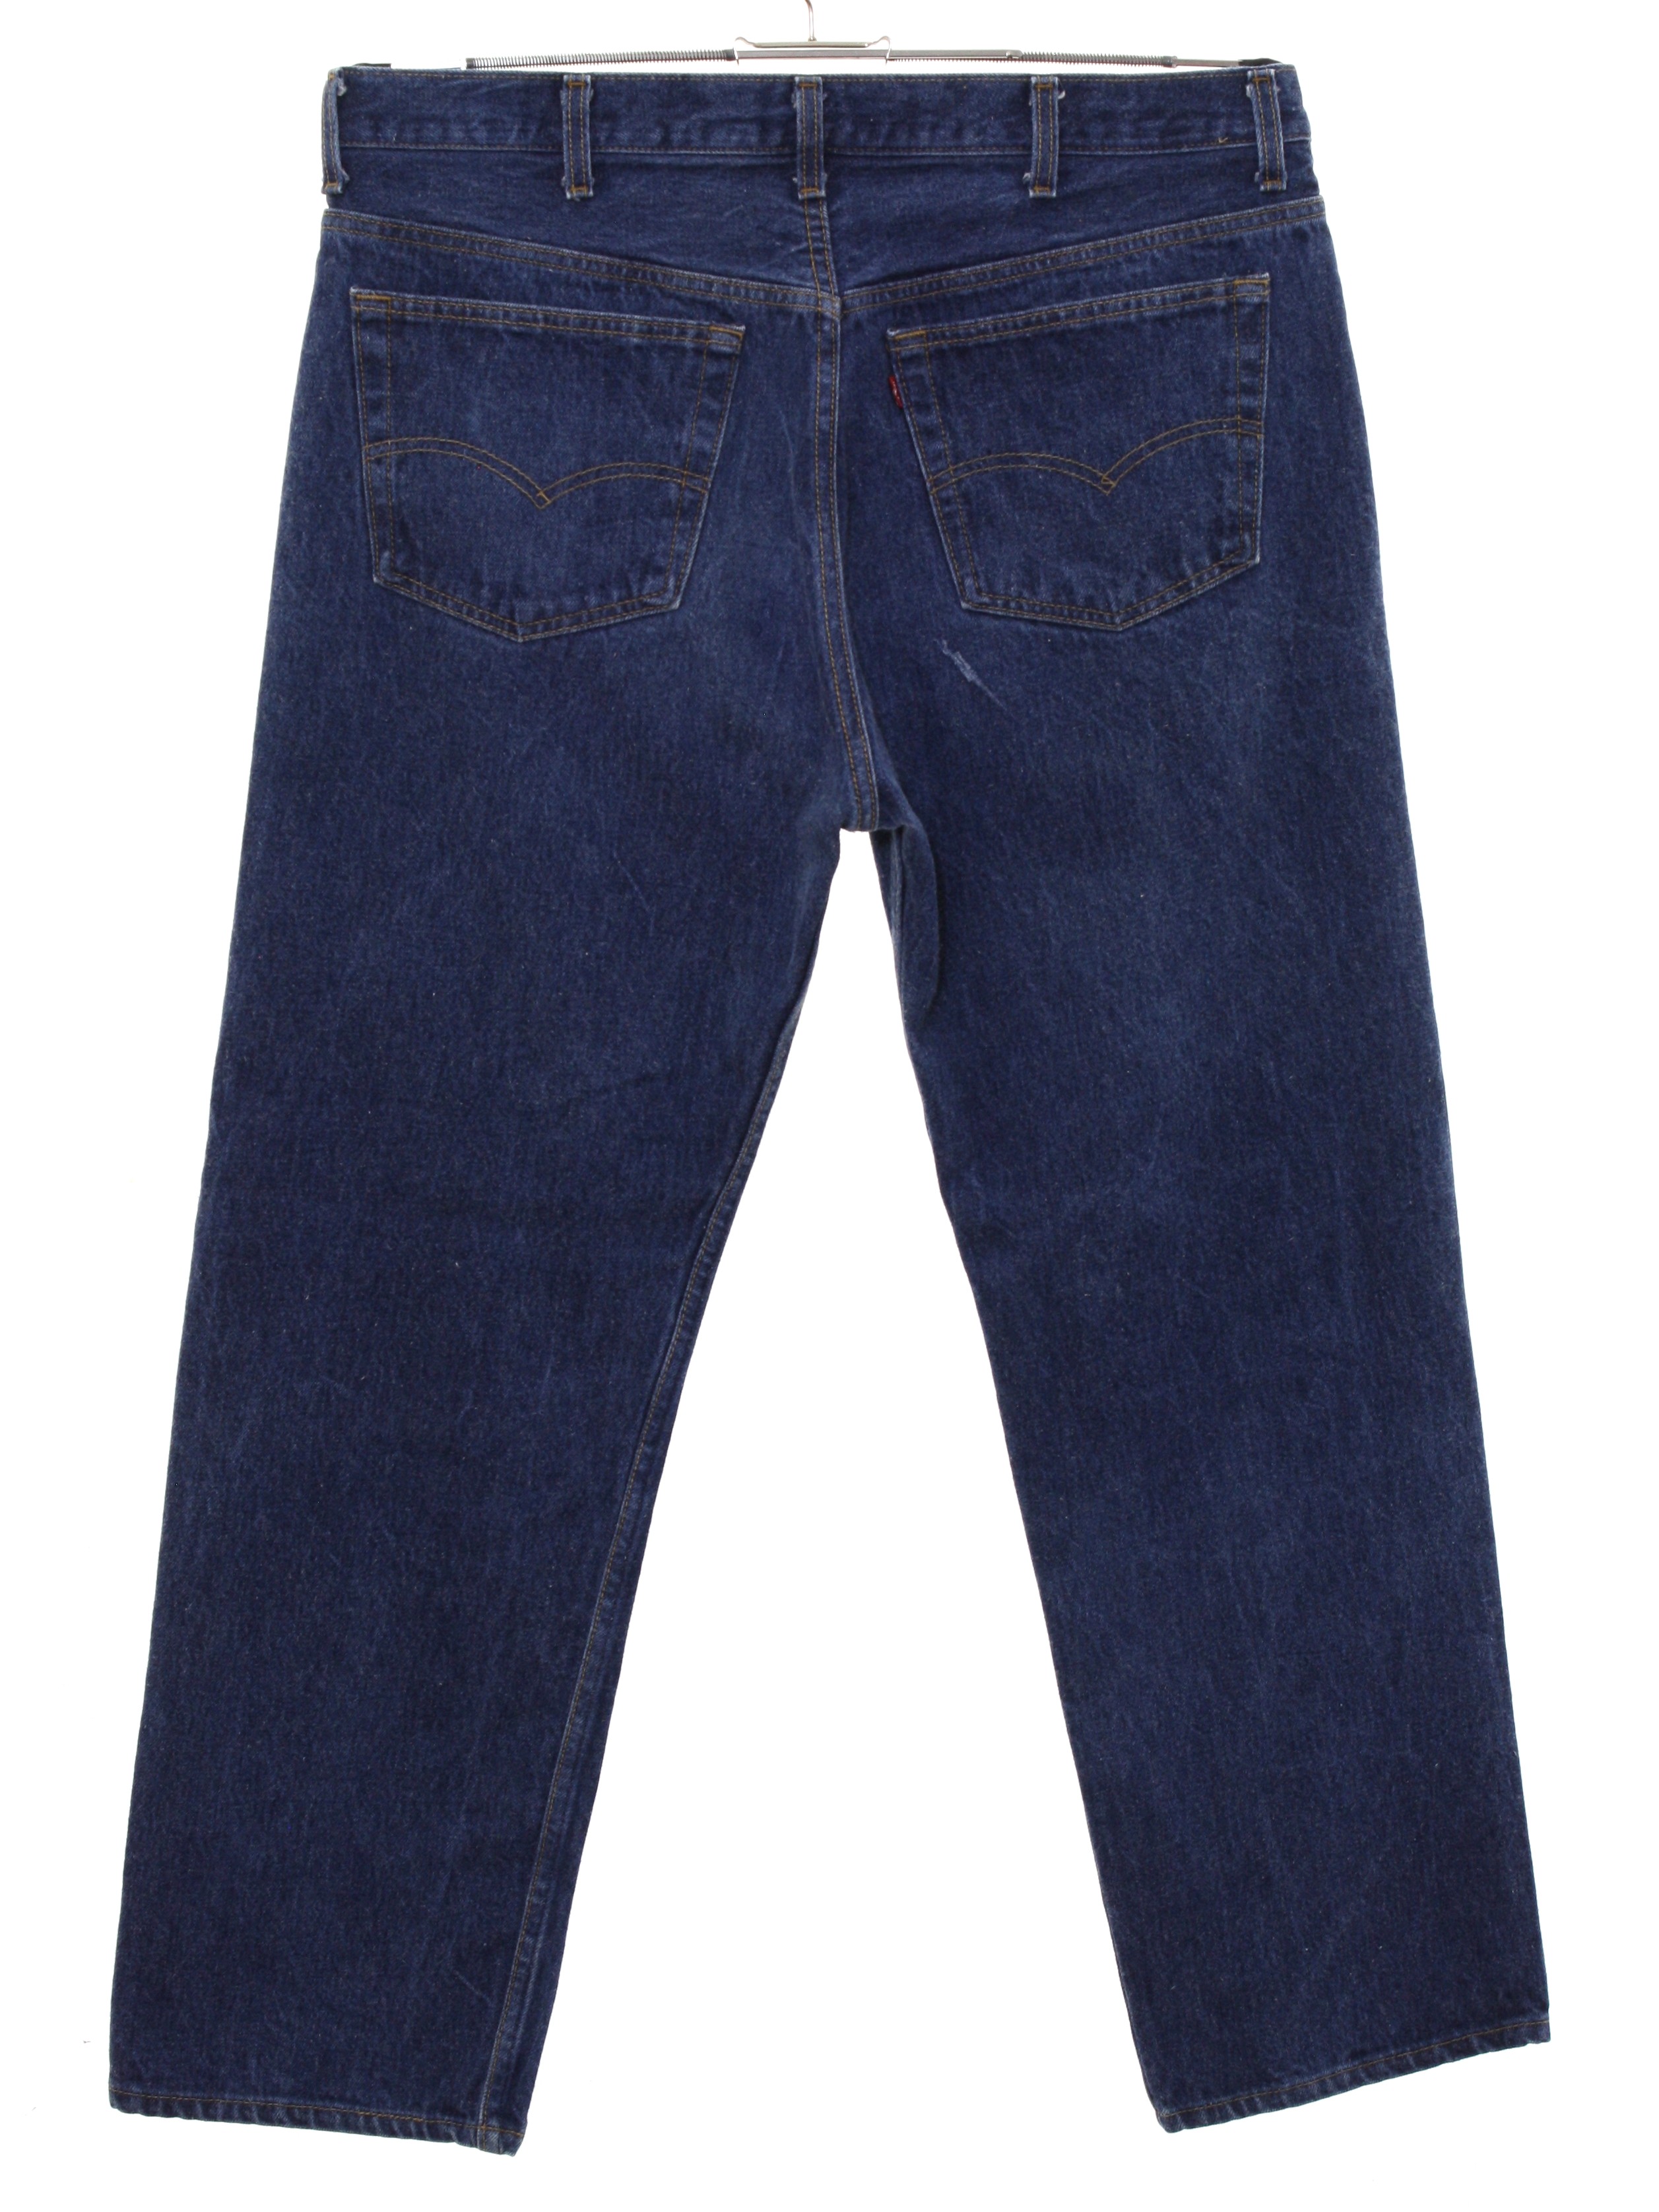 levis 501 denim jeans